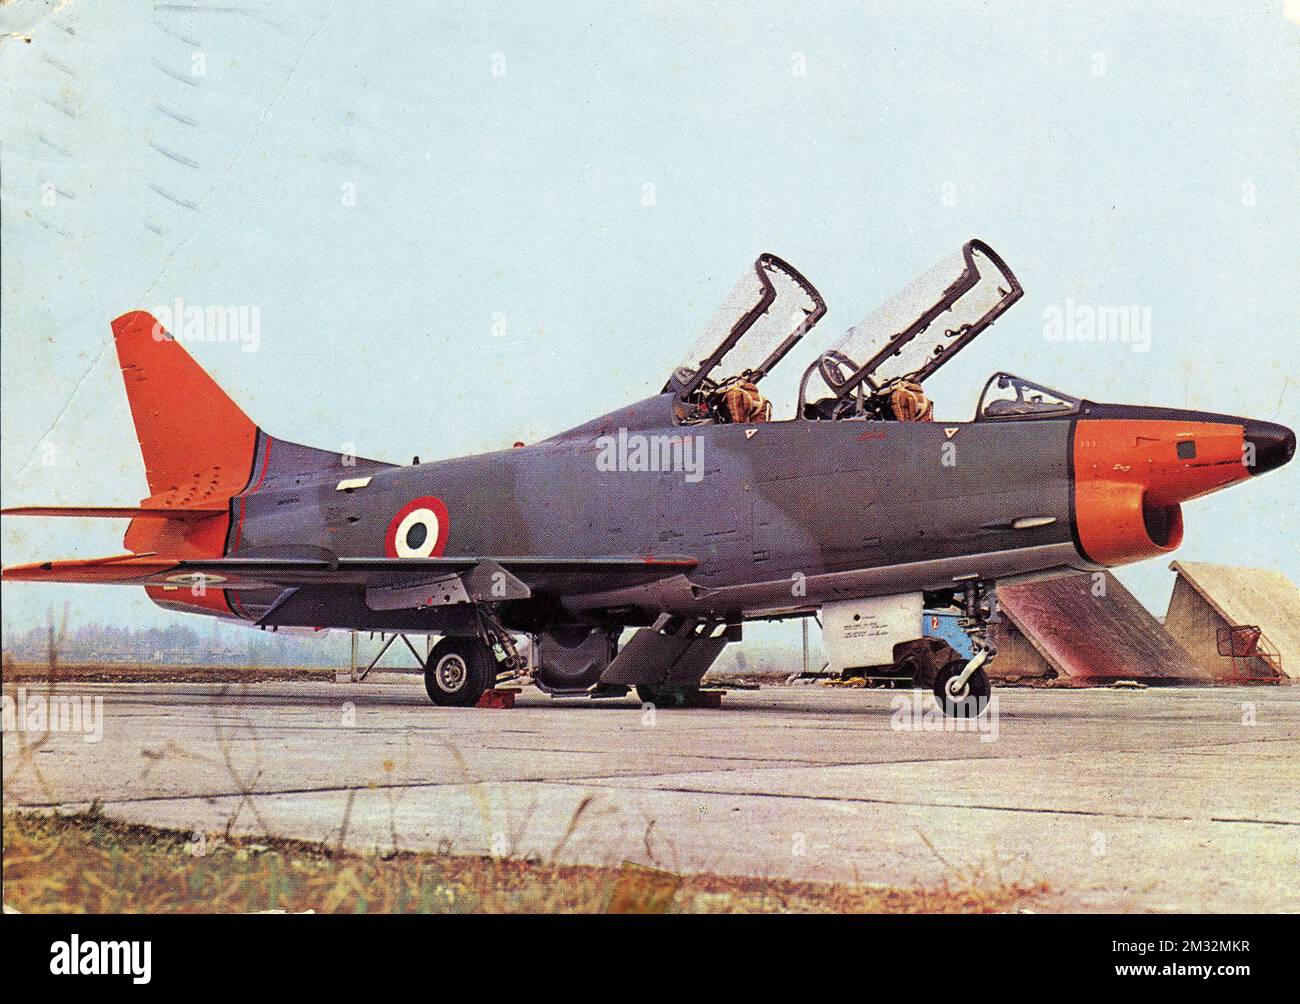 Aeroplani - Fiat G.91, poi Aeritalia G-91, era un cacciabombardiere-ricognitore monomotore a getto ed ala a freccia progettato dall'ing. Giuseppe Gabrielli e prodotto dall'azienda aeronautica italiana Fiat Aviazione Stock Photo